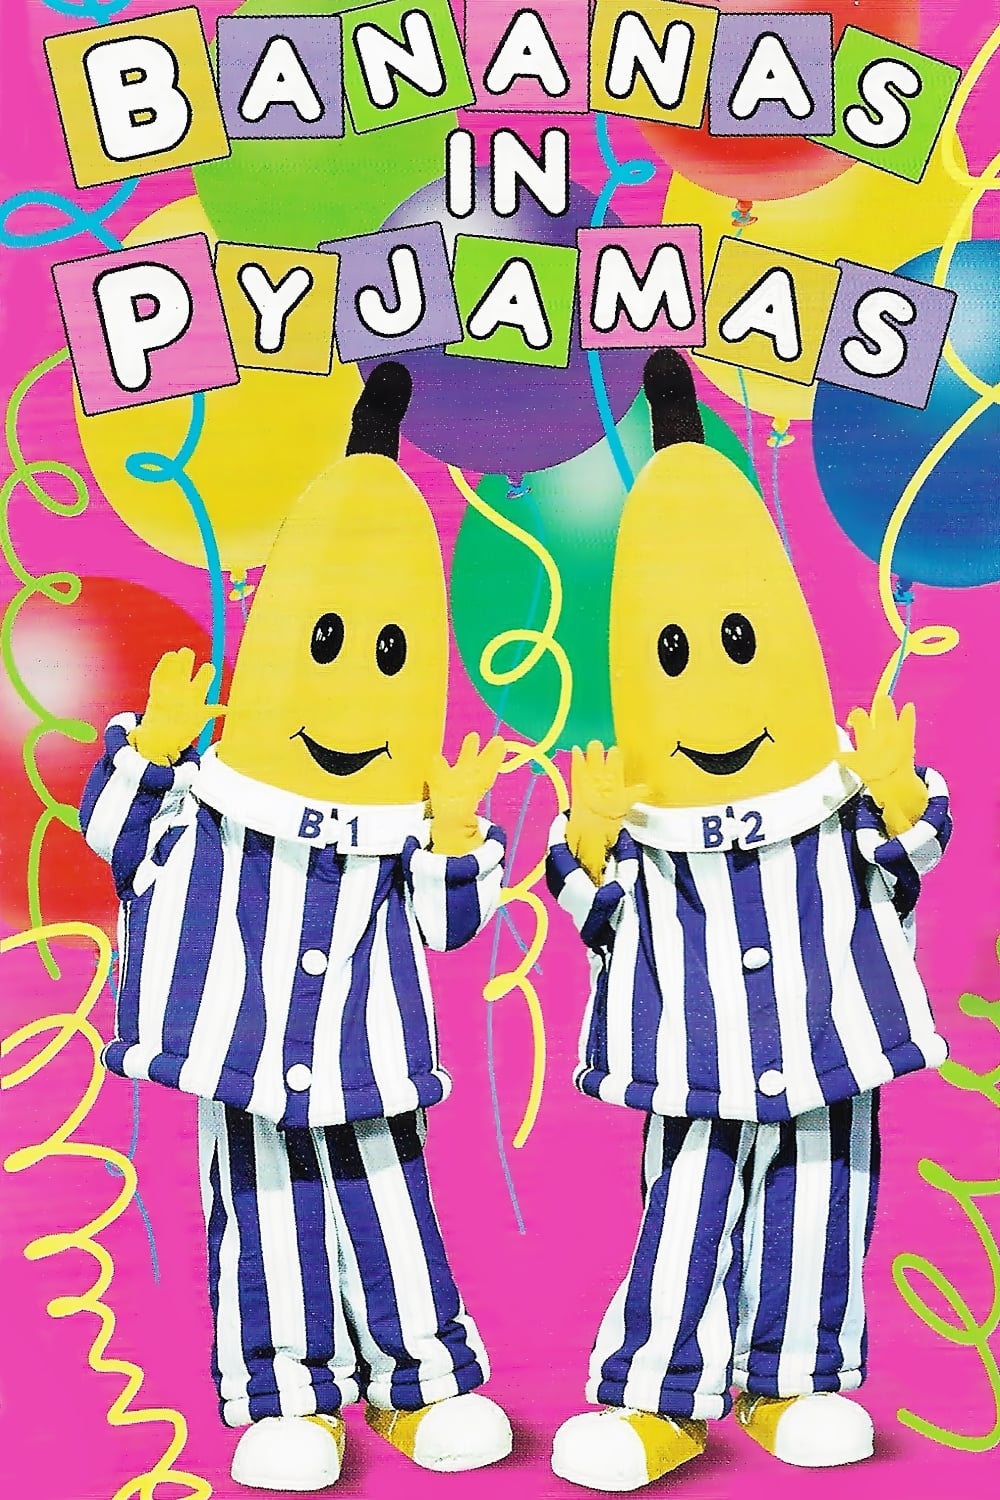 Bananas in Pyjamas (1992)